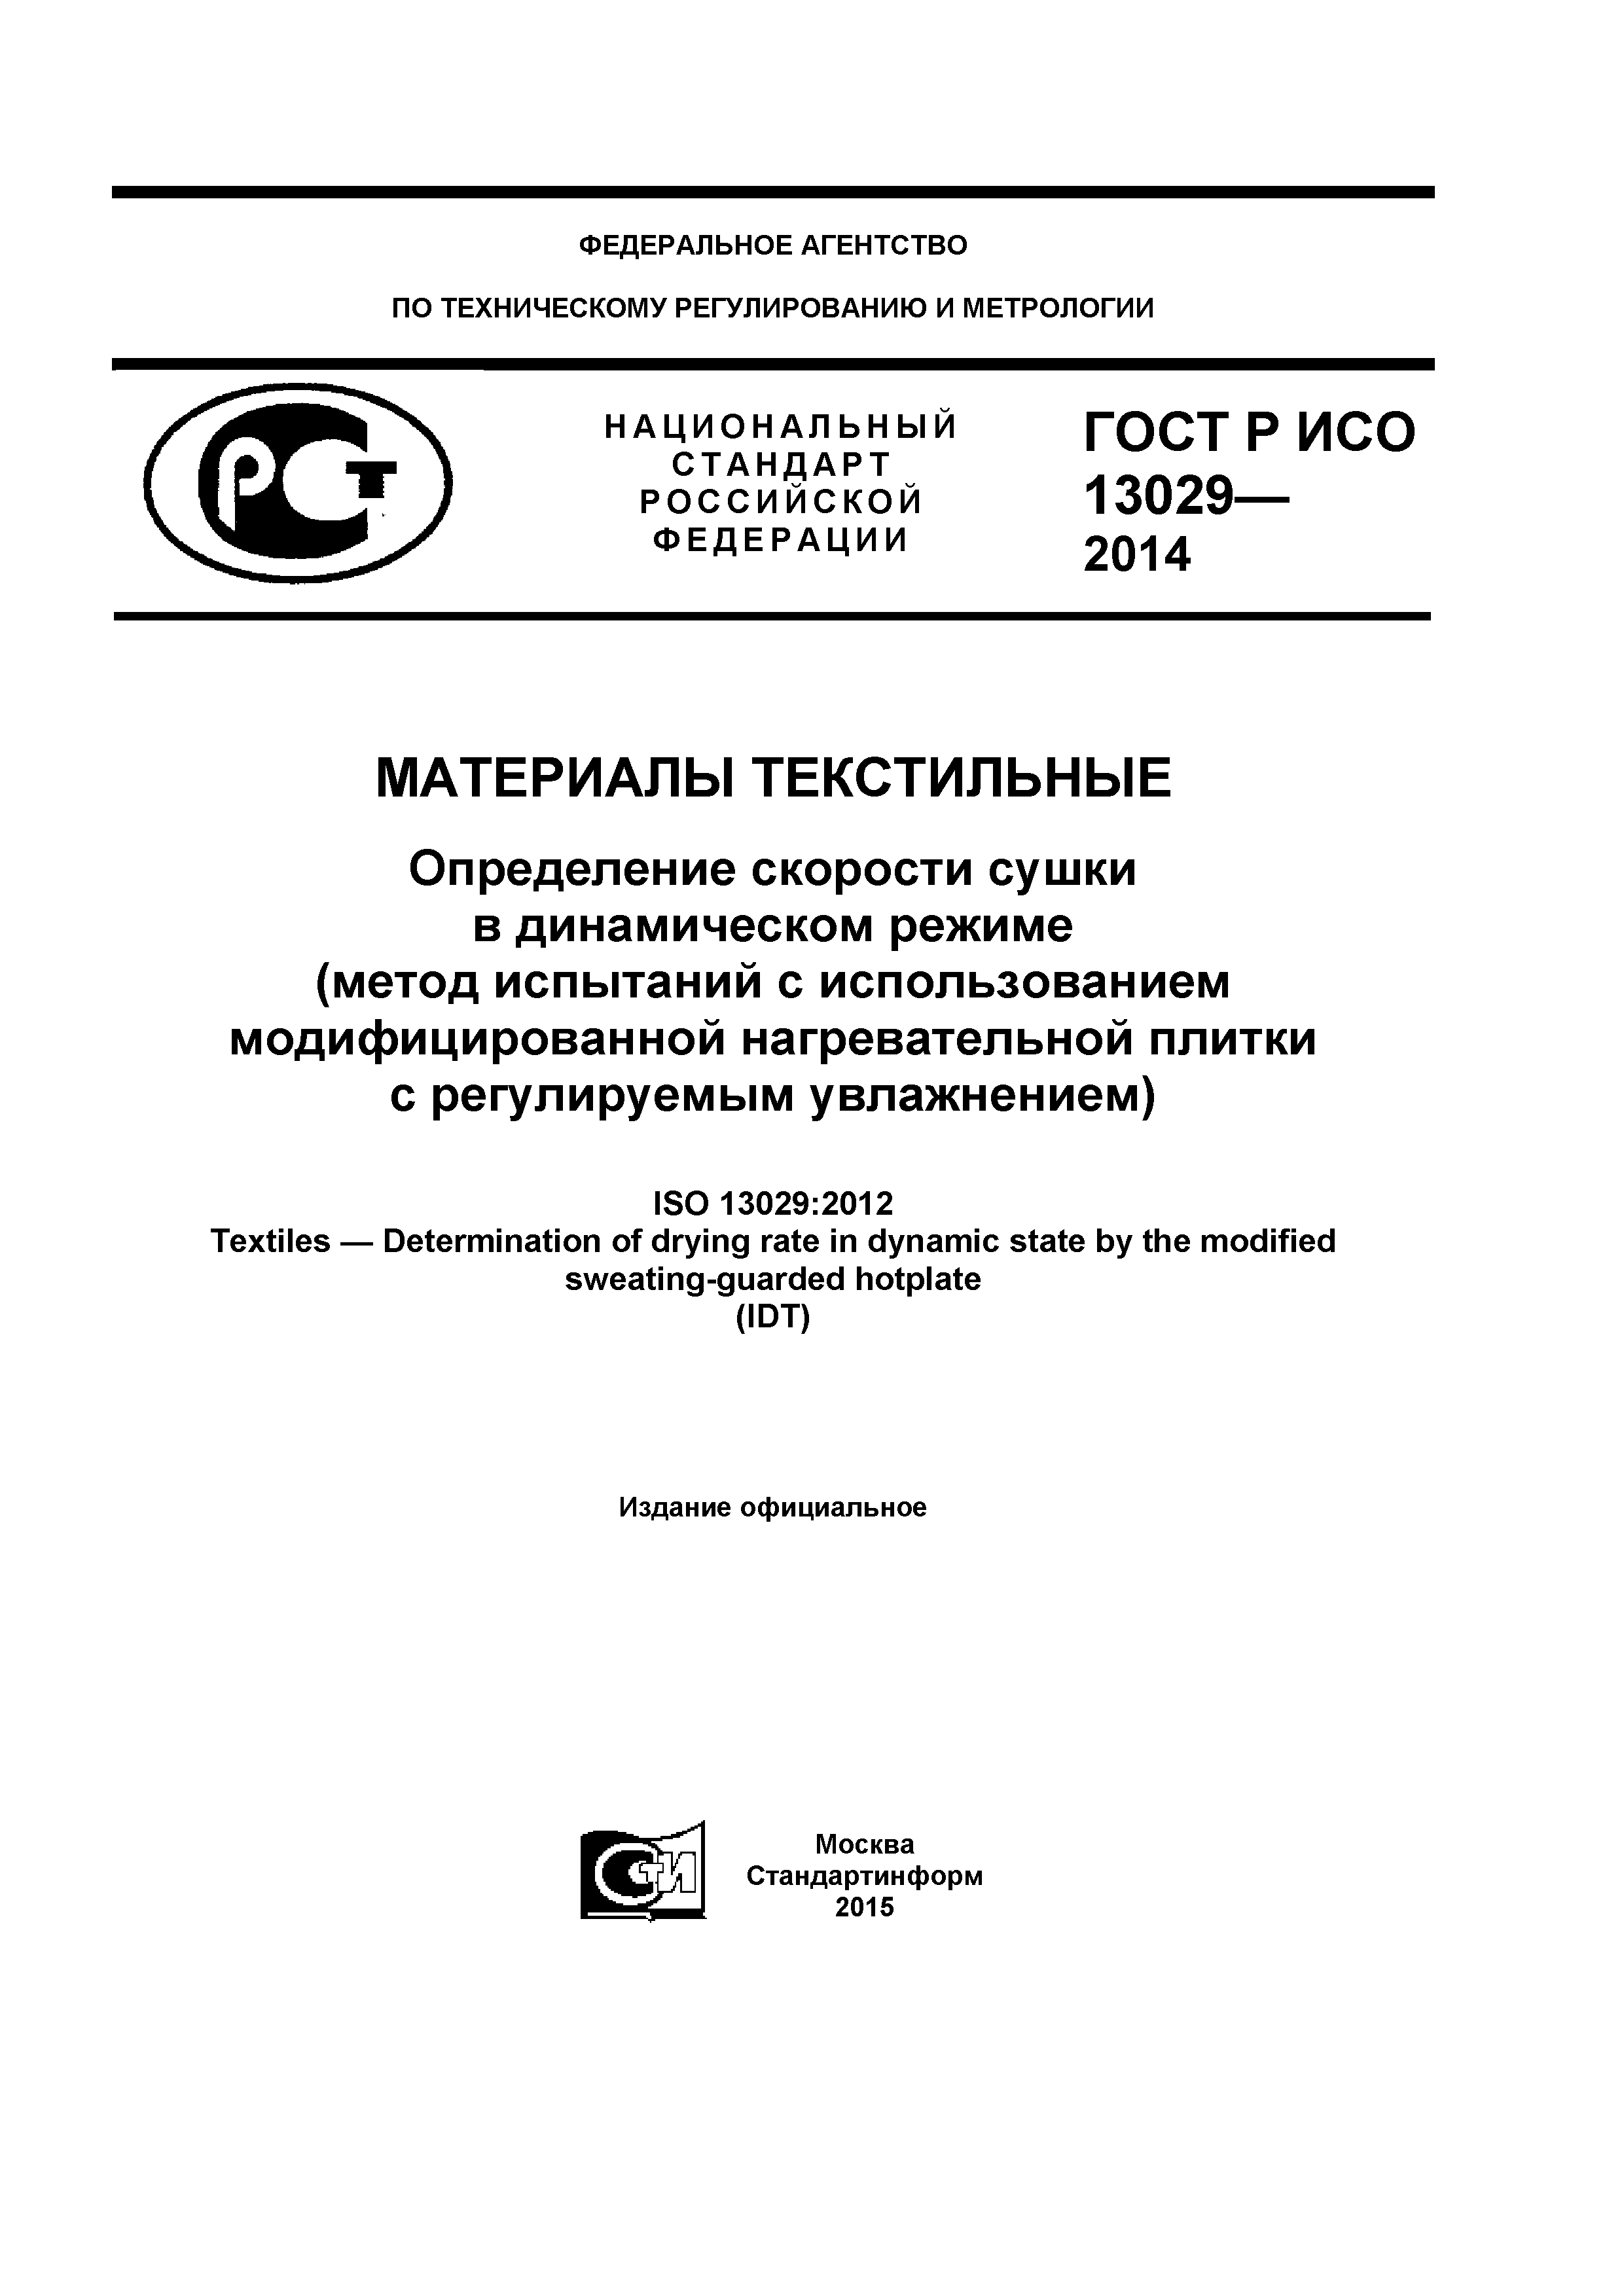 ГОСТ Р ИСО 13029-2014